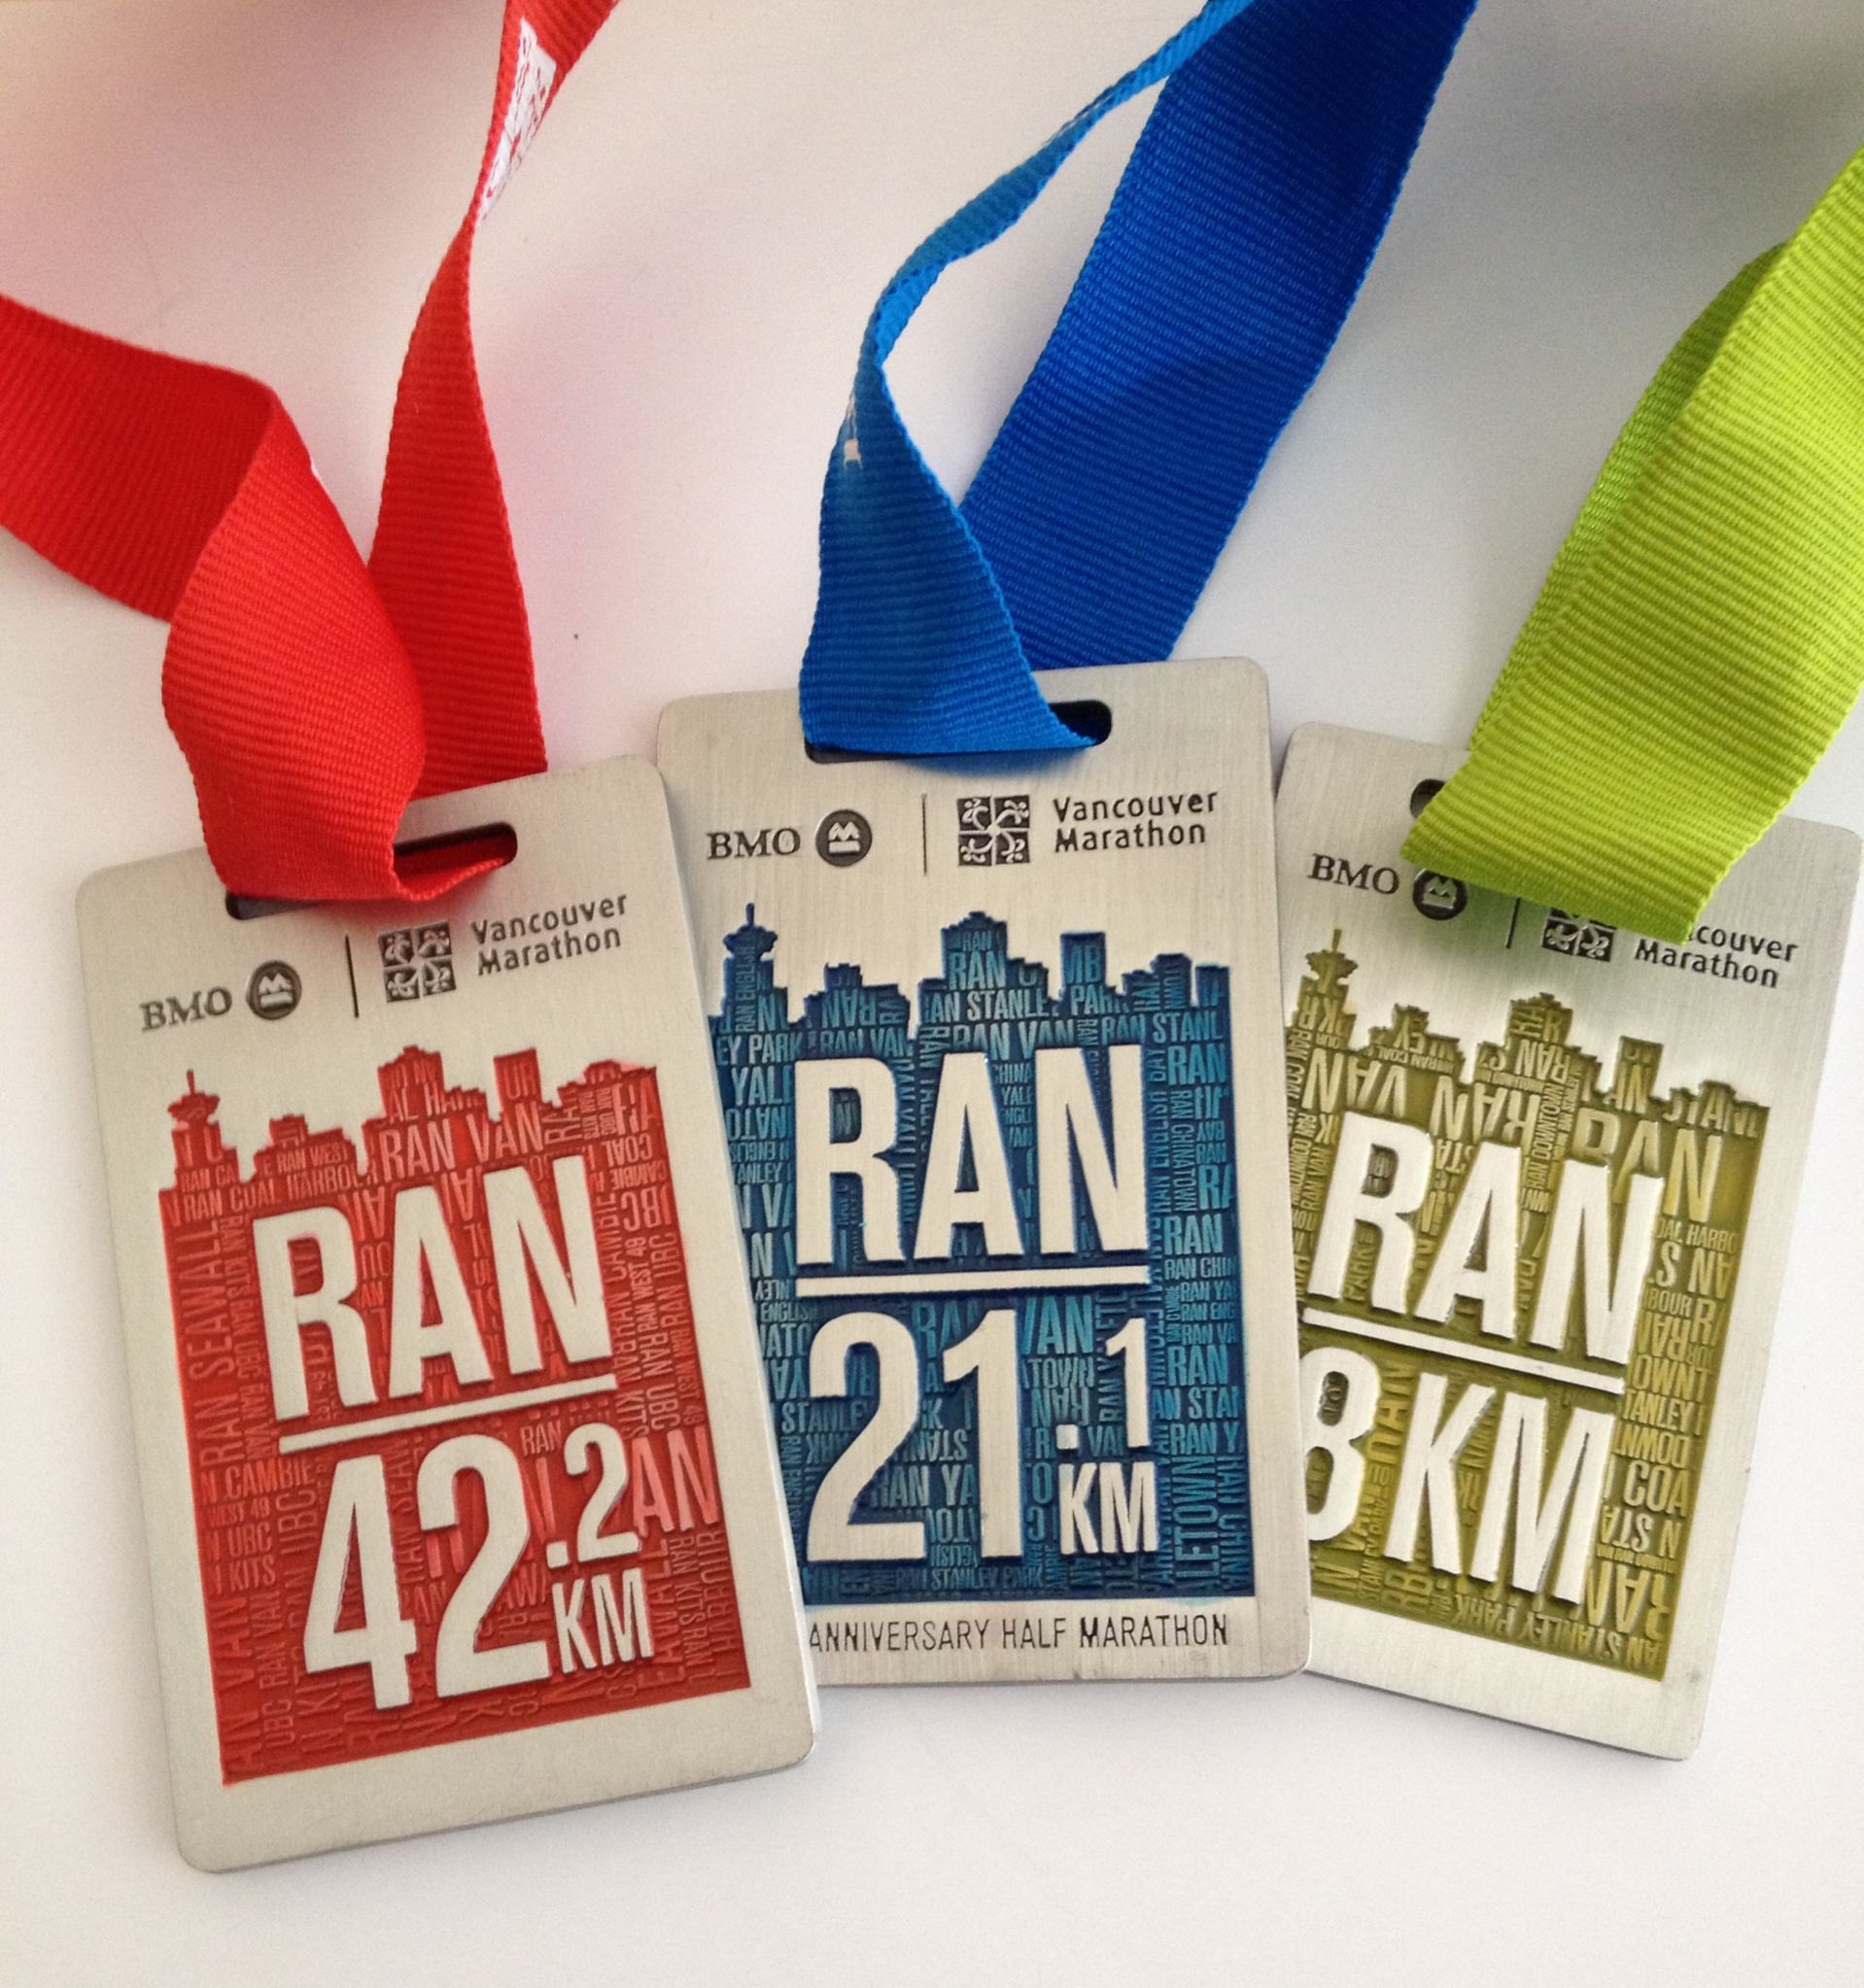 2014 BMO Vancouver Marathon Medals & Shirt Reveal